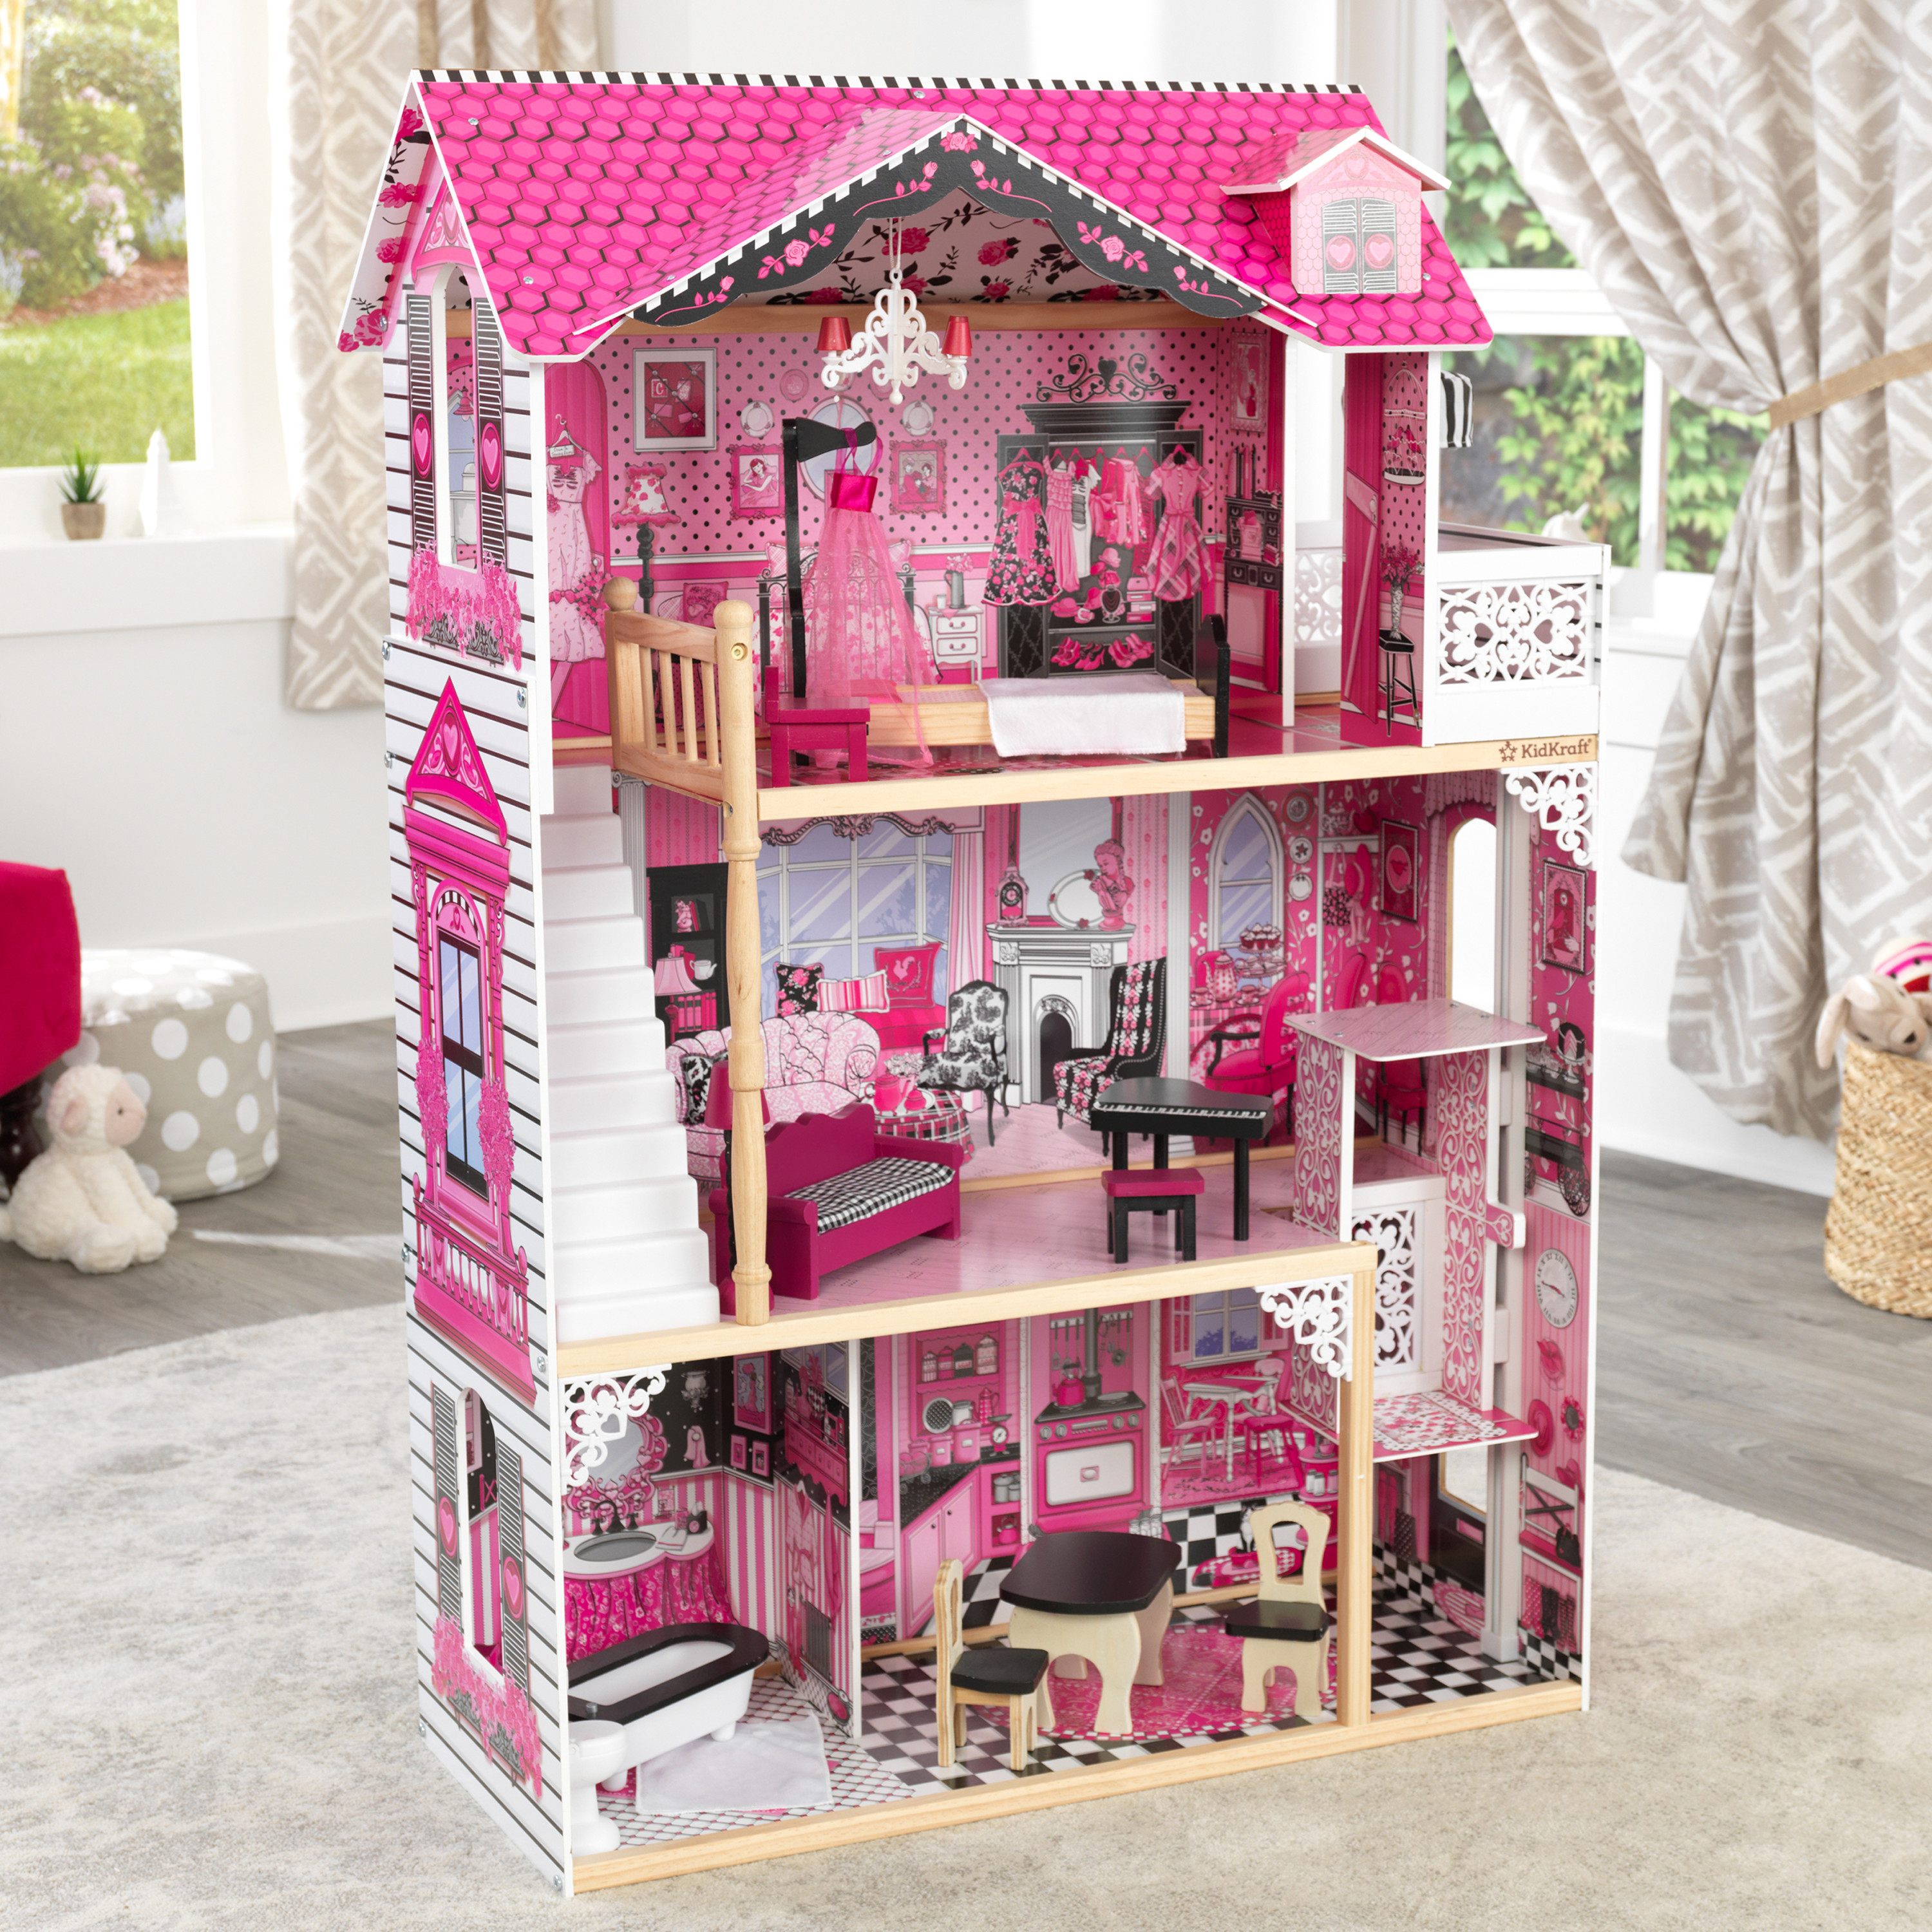 Amelia doll house - la casa delle bambole ideale per ispirare l'immaginazione dei bambini, accogliente, stilosa e fornita di 15 accessori per avventure senza fine - 